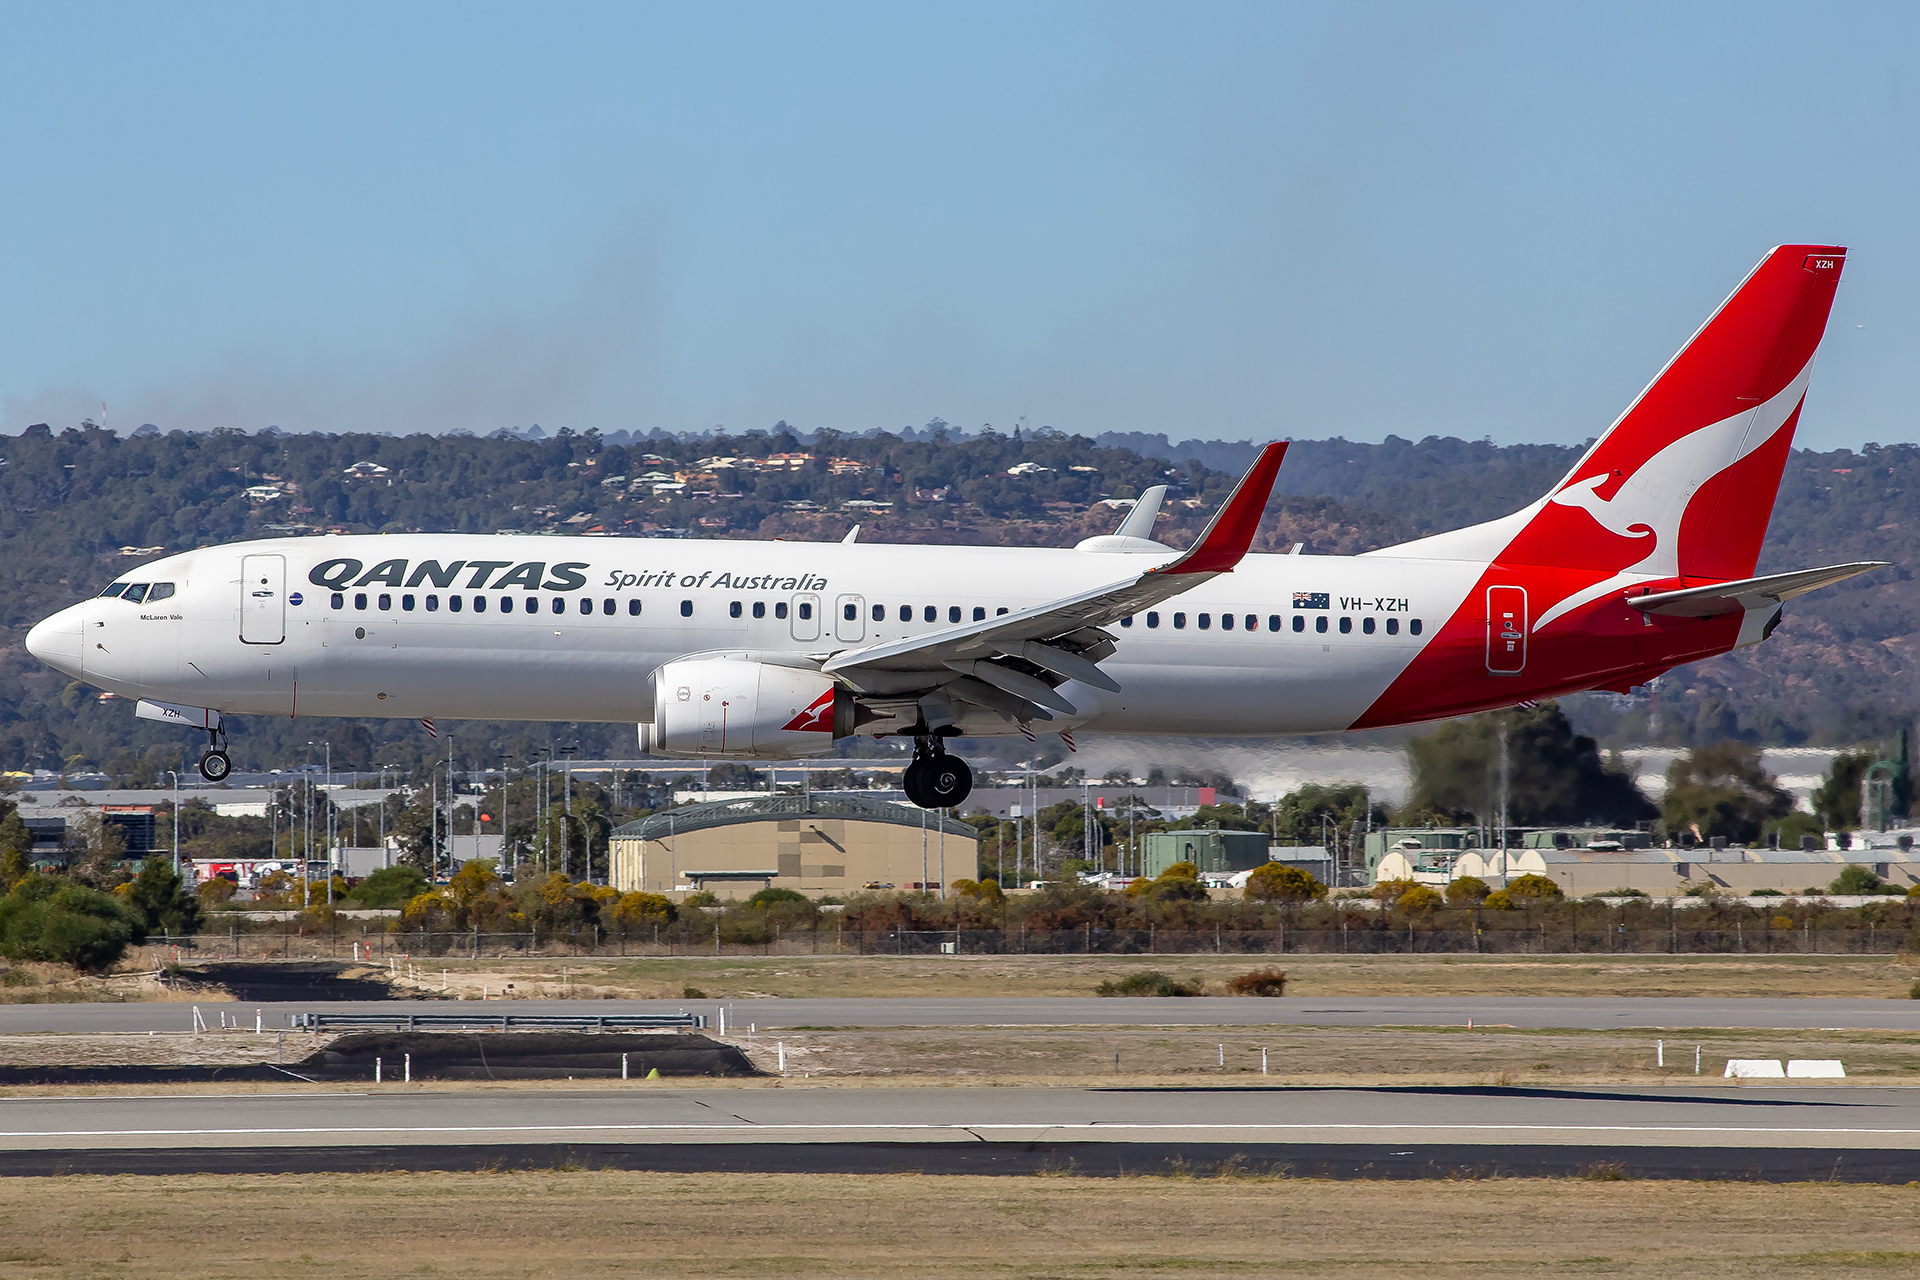 VH-XZH/VHXZH Qantas Boeing 737 NG Airframe Information - AVSpotters.com